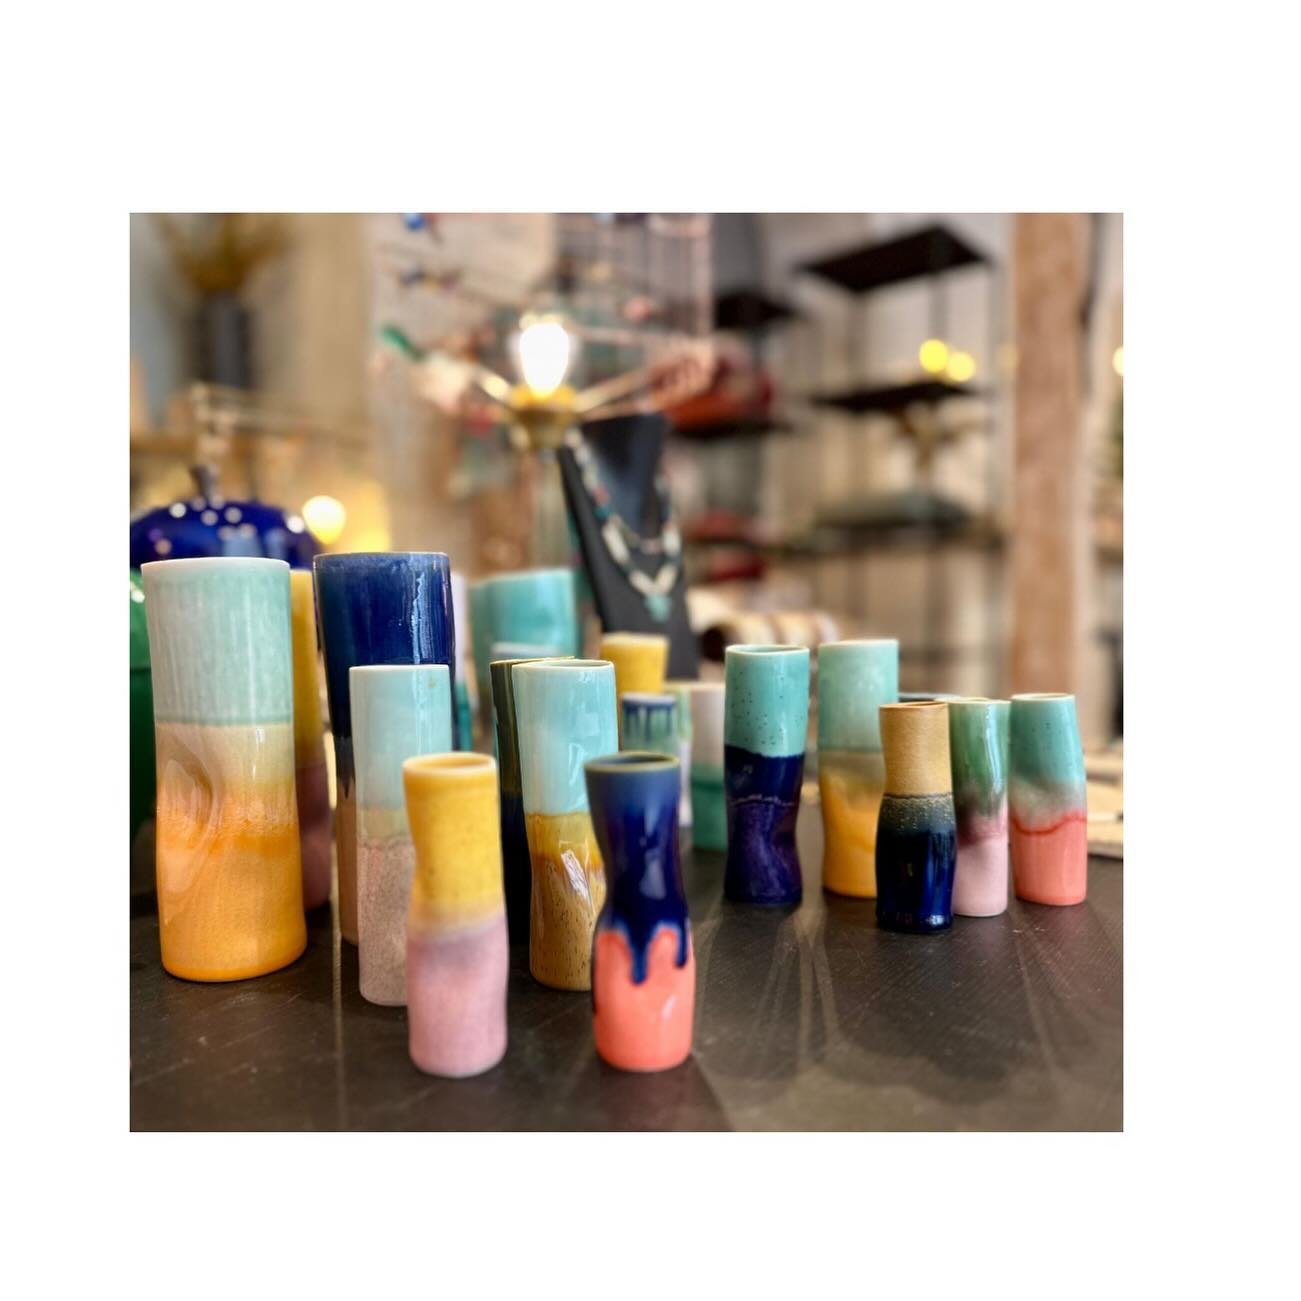 B E A U T E S ✨
Mix &amp; match avec nos nouveaux vases merveilleusement color&eacute;s et distordus 😍 #conceptstore #geneve